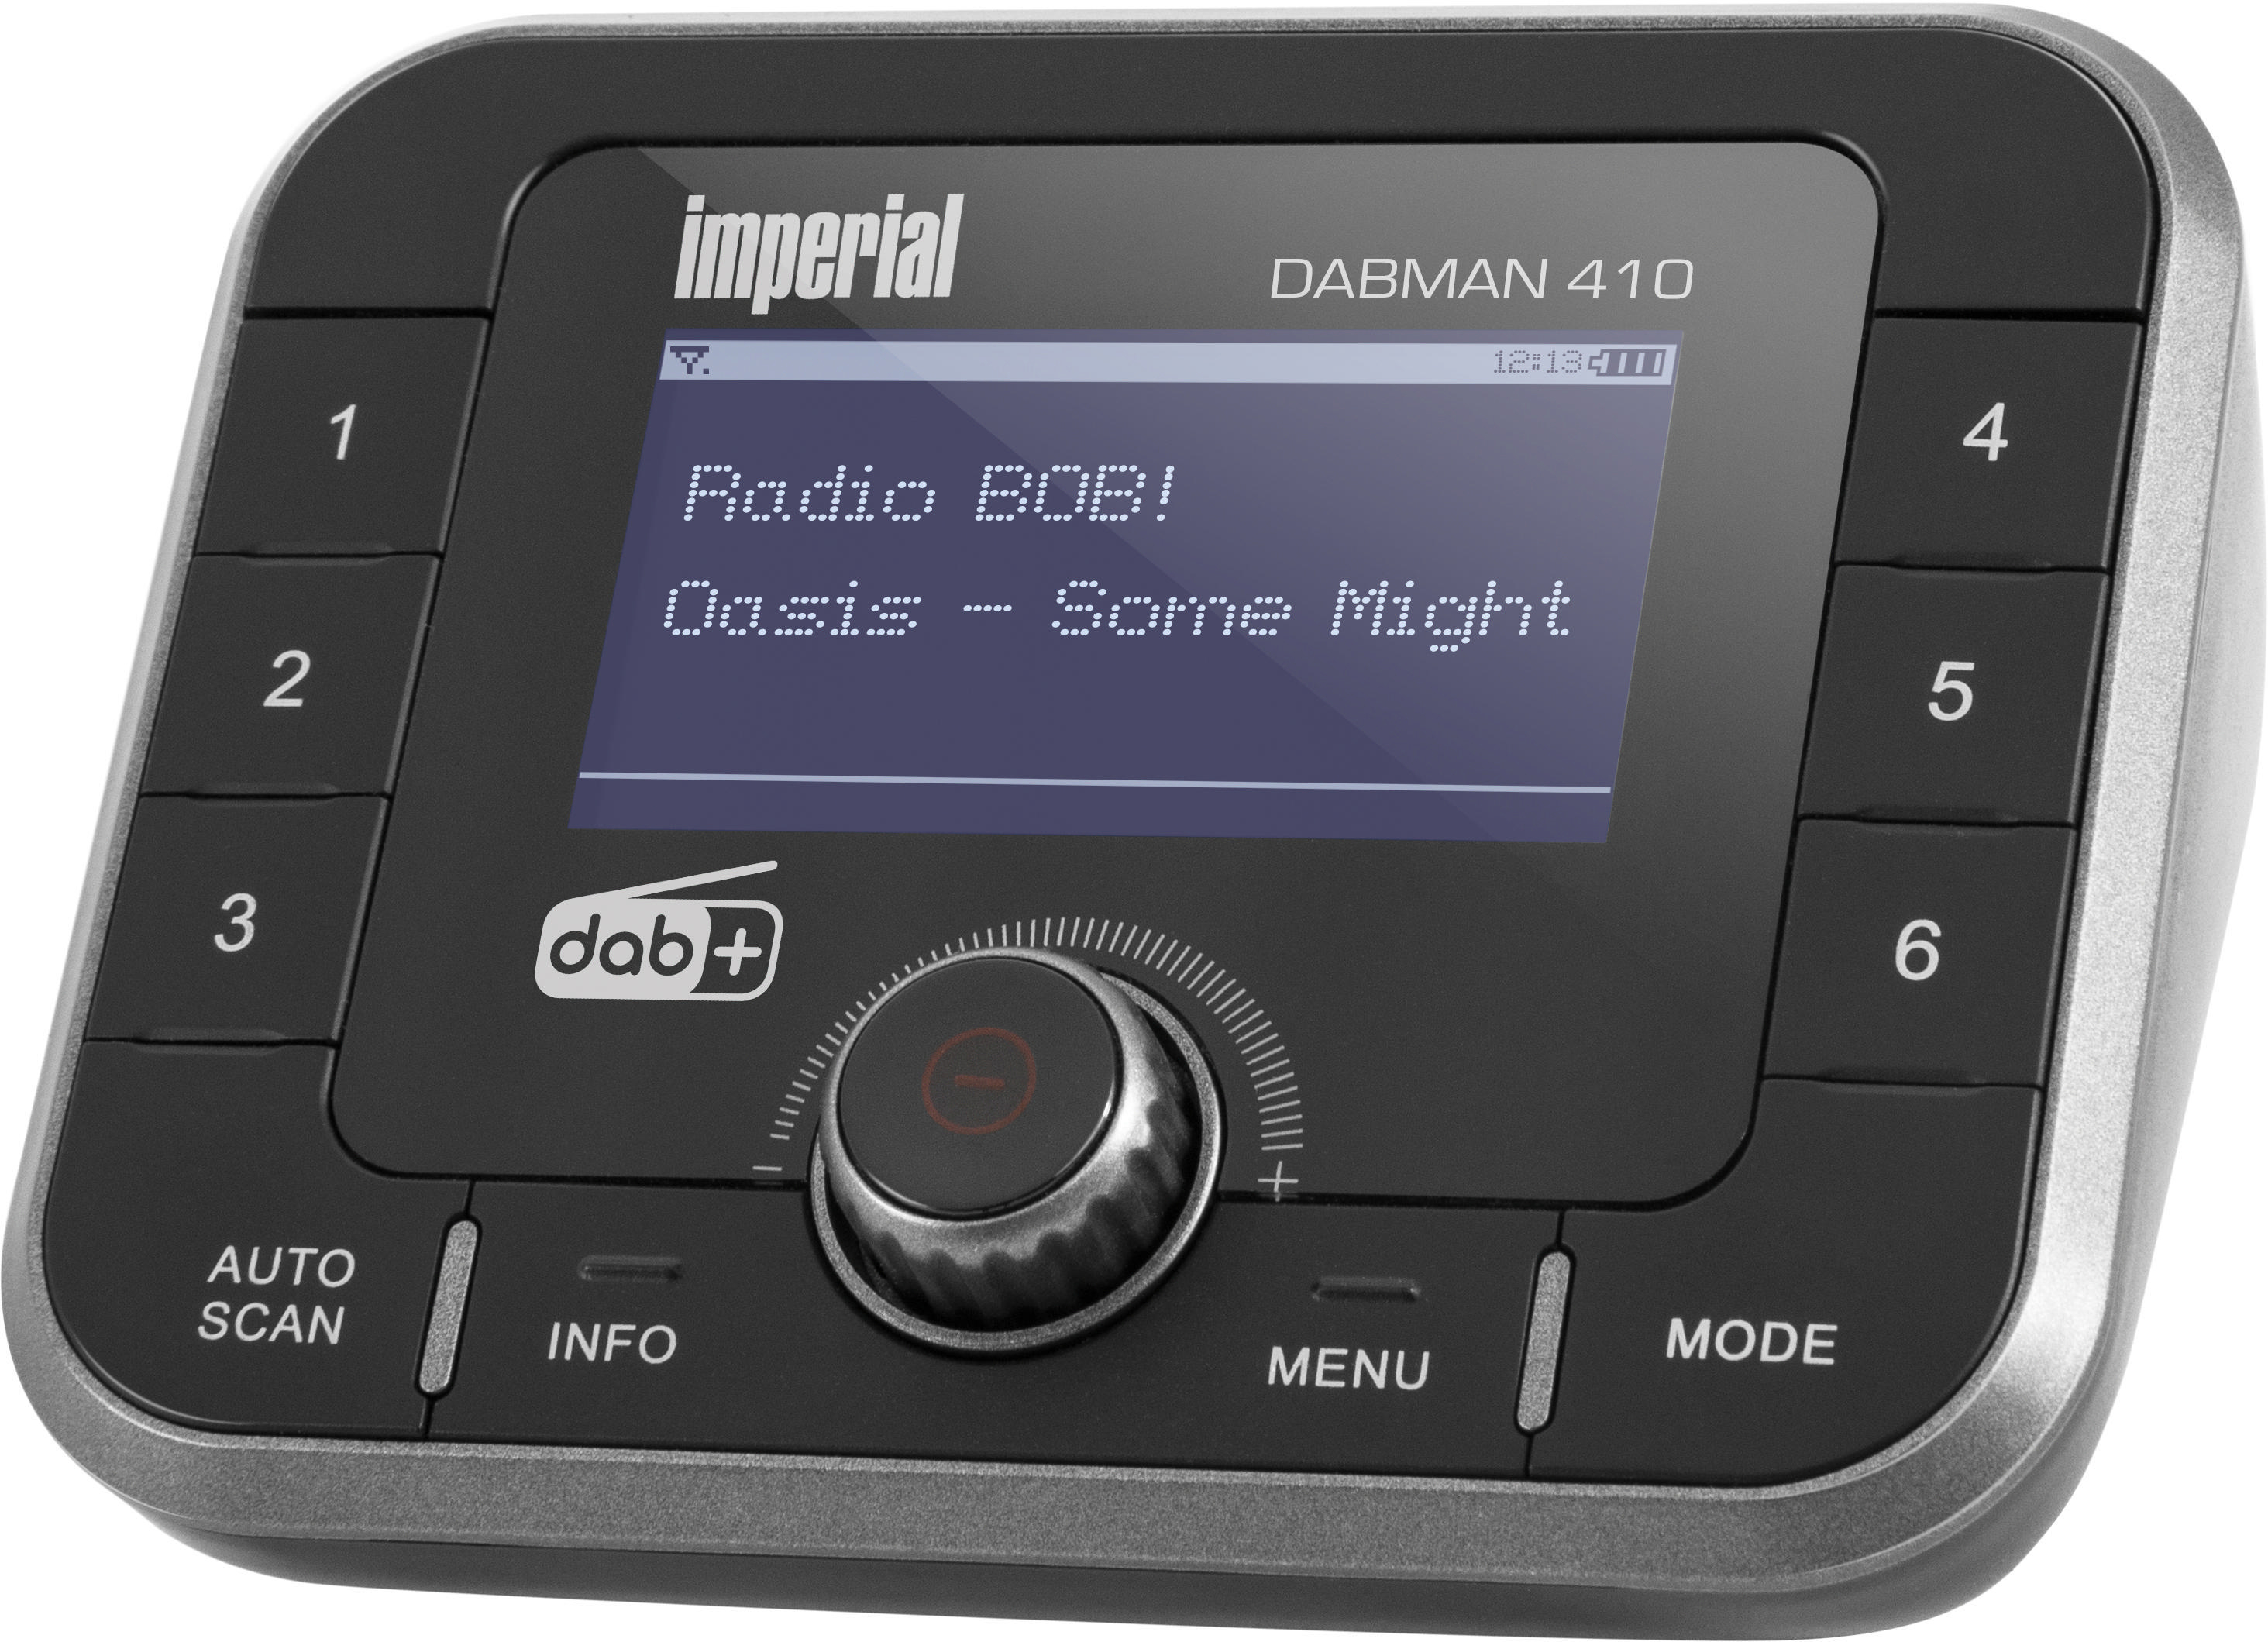 / FM, AM, DABMAN HiFi UKW, DAB+ Digitalradio Schwarz DAB, Bluetooth, DAB+, DAB+ IMPERIAL Adapter, 410